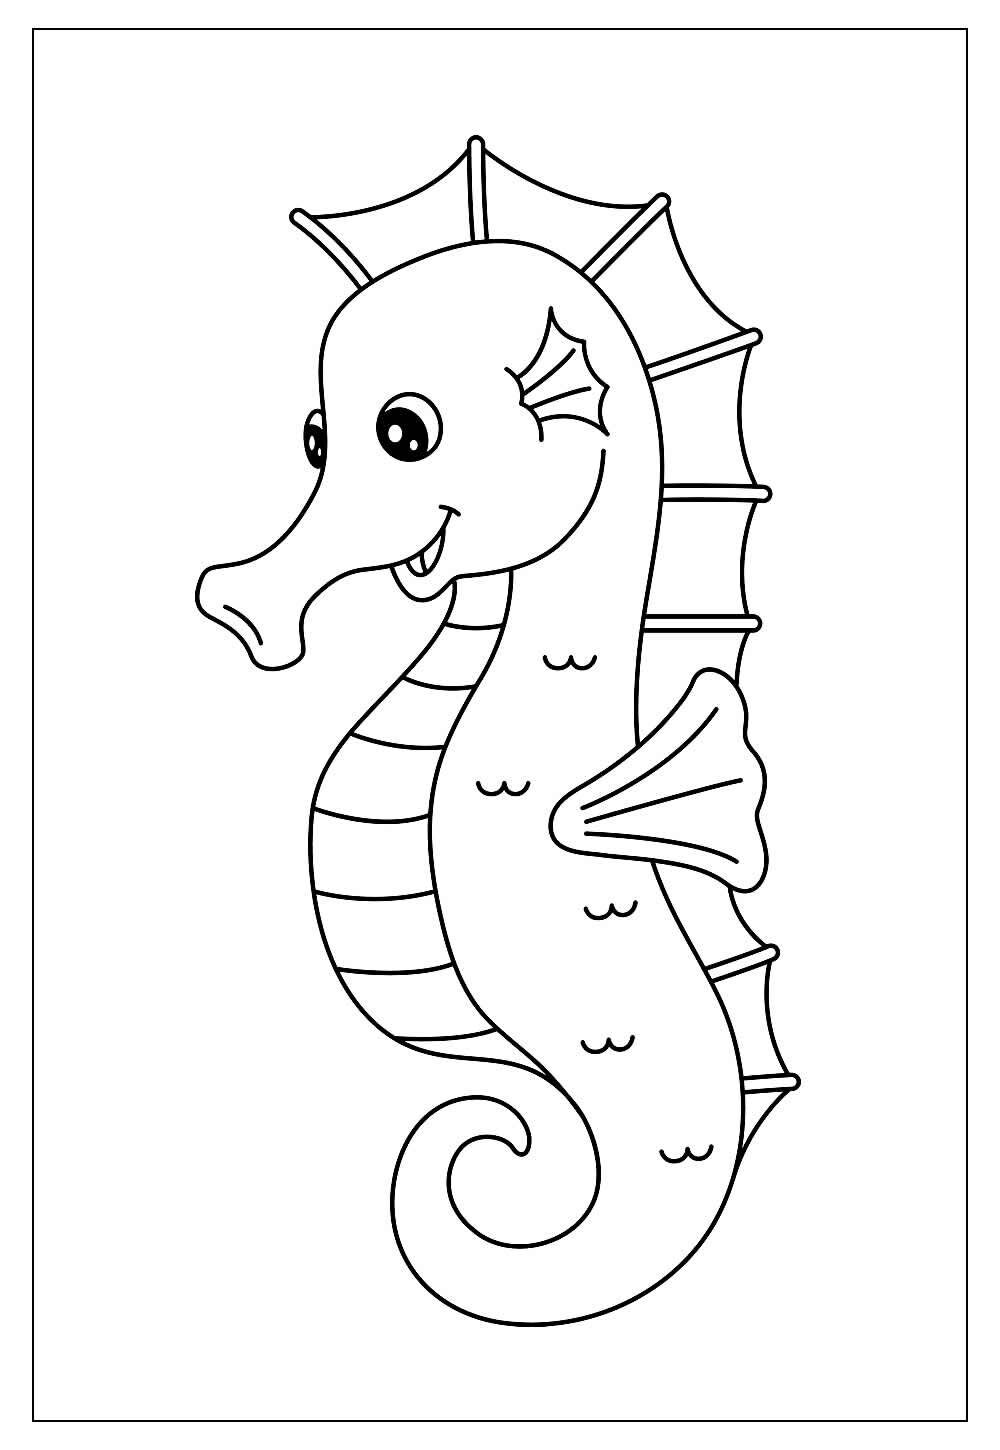 Ilustração de desenho de cavalo-marinho fofo para colorir